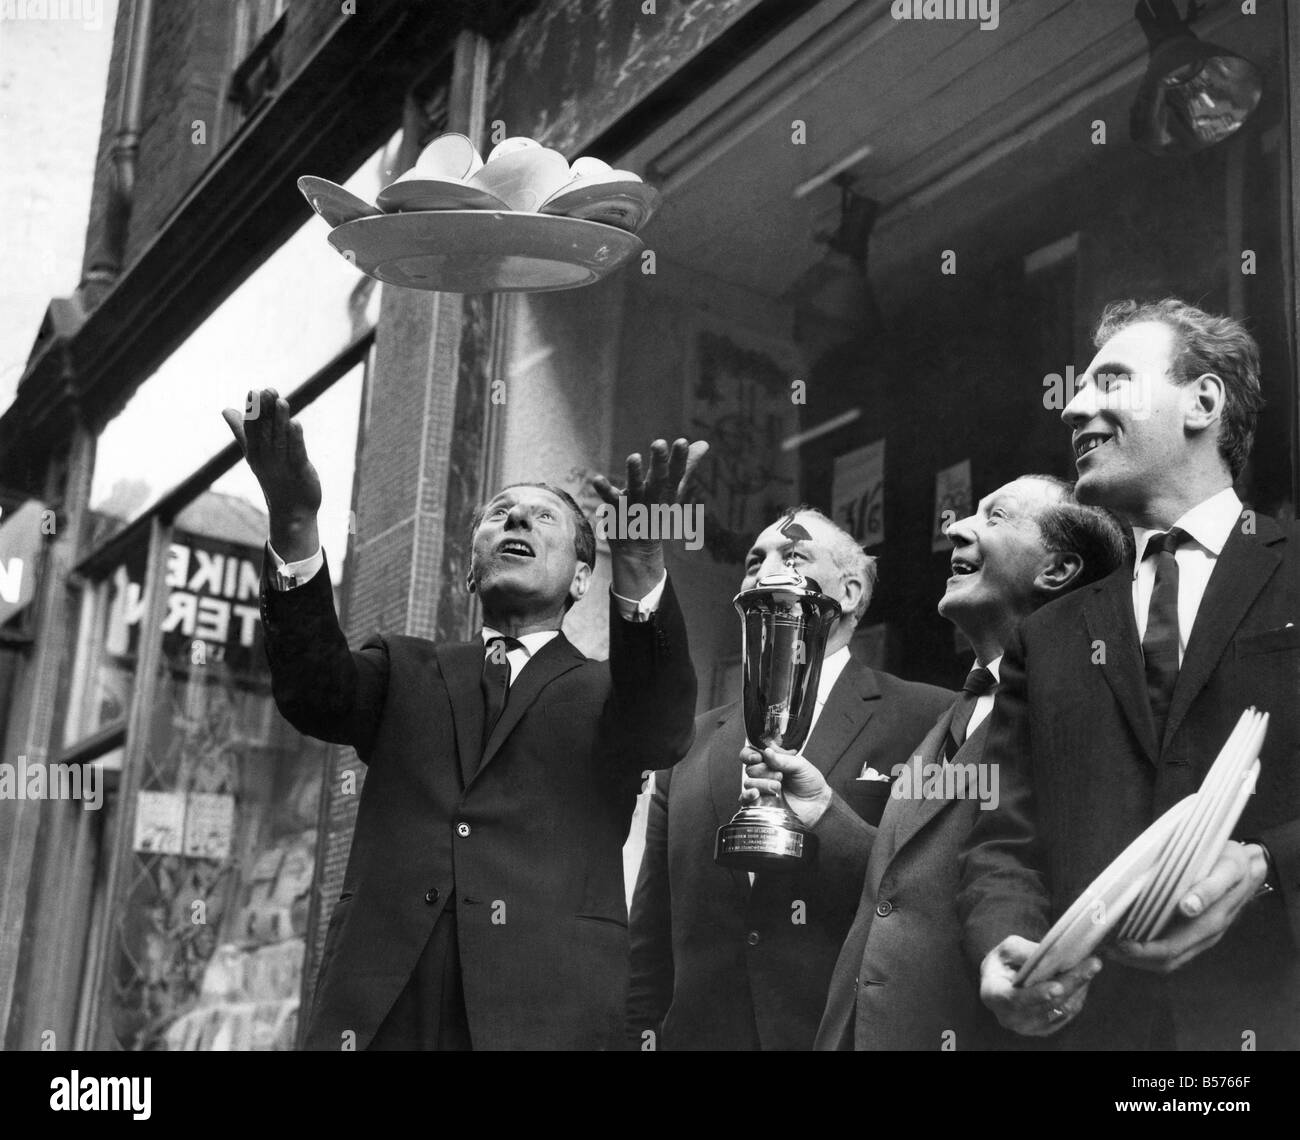 Les vendeurs de rue : Sid Strong lance en altitude un plateau rempli de tasses et soucoupes, l'une de ses tours qu'il effectue lors de la vente dans l'allée. Avril 1964 P004961 Banque D'Images